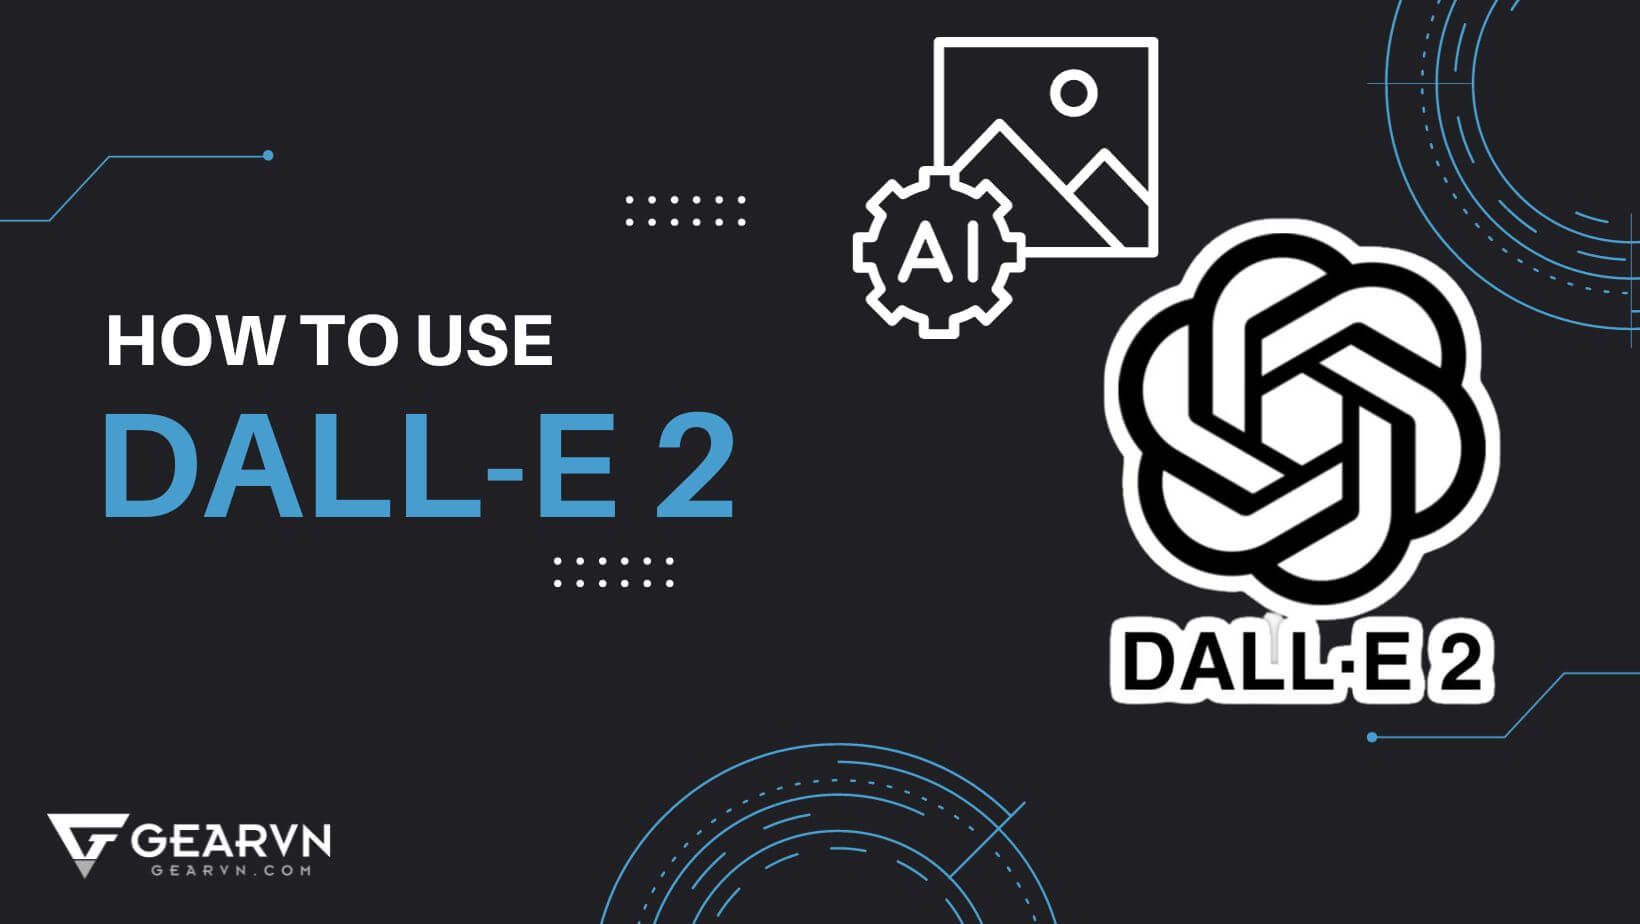 Hướng dẫn chi tiết cách tạo ảnh AI trên Dall-E 2